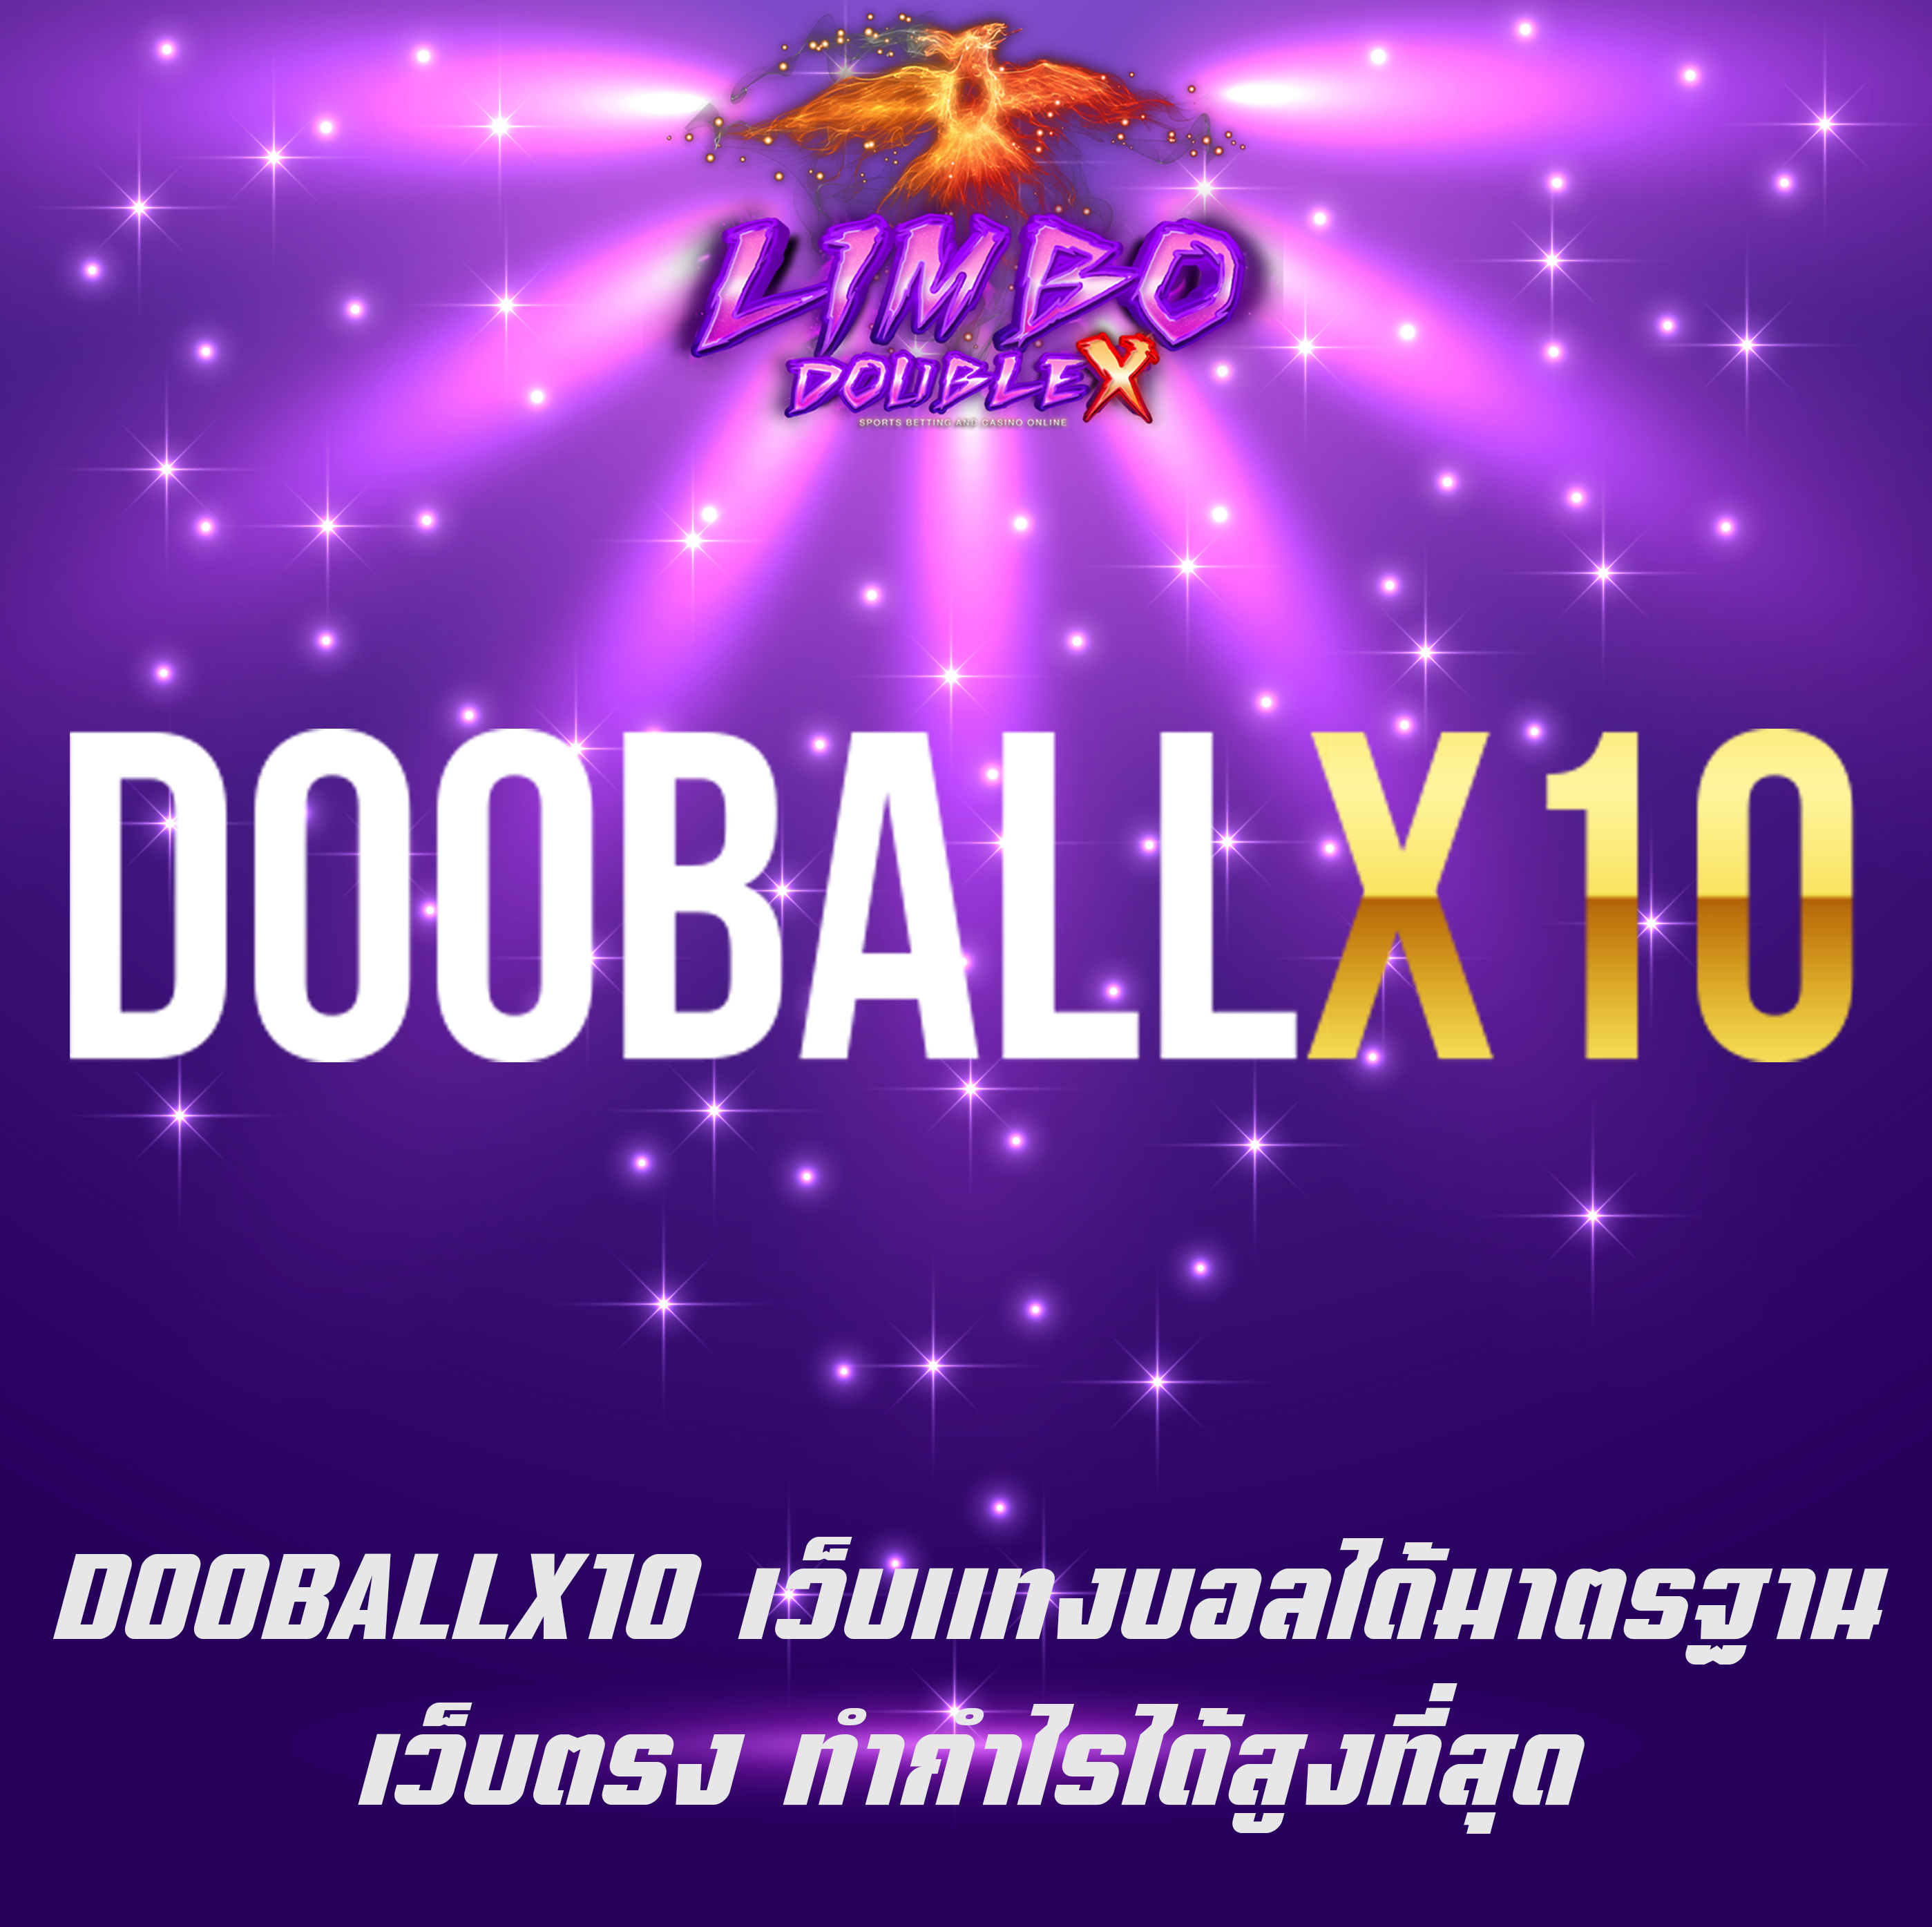 DOOBALLX10 เว็บแทงบอลได้มาตรฐาน เว็บตรง ทำกำไรได้สูงที่สุด